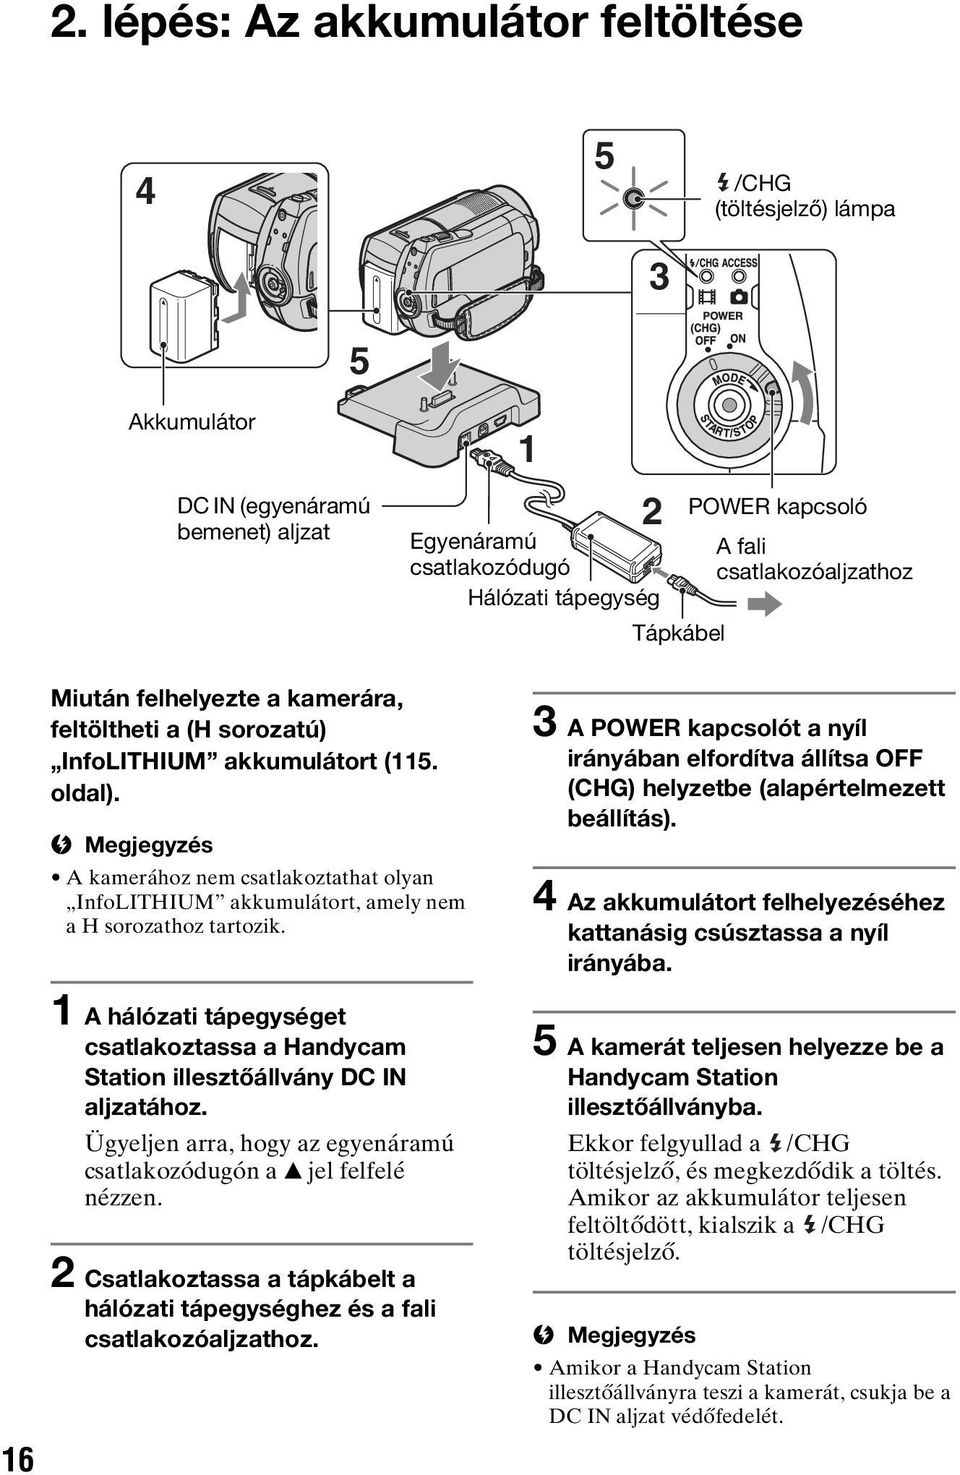 A kamerához nem csatlakoztathat olyan InfoLITHIUM akkumulátort, amely nem a H sorozathoz tartozik. 1 A hálózati tápegységet csatlakoztassa a Handycam Station illesztőállvány DC IN aljzatához.